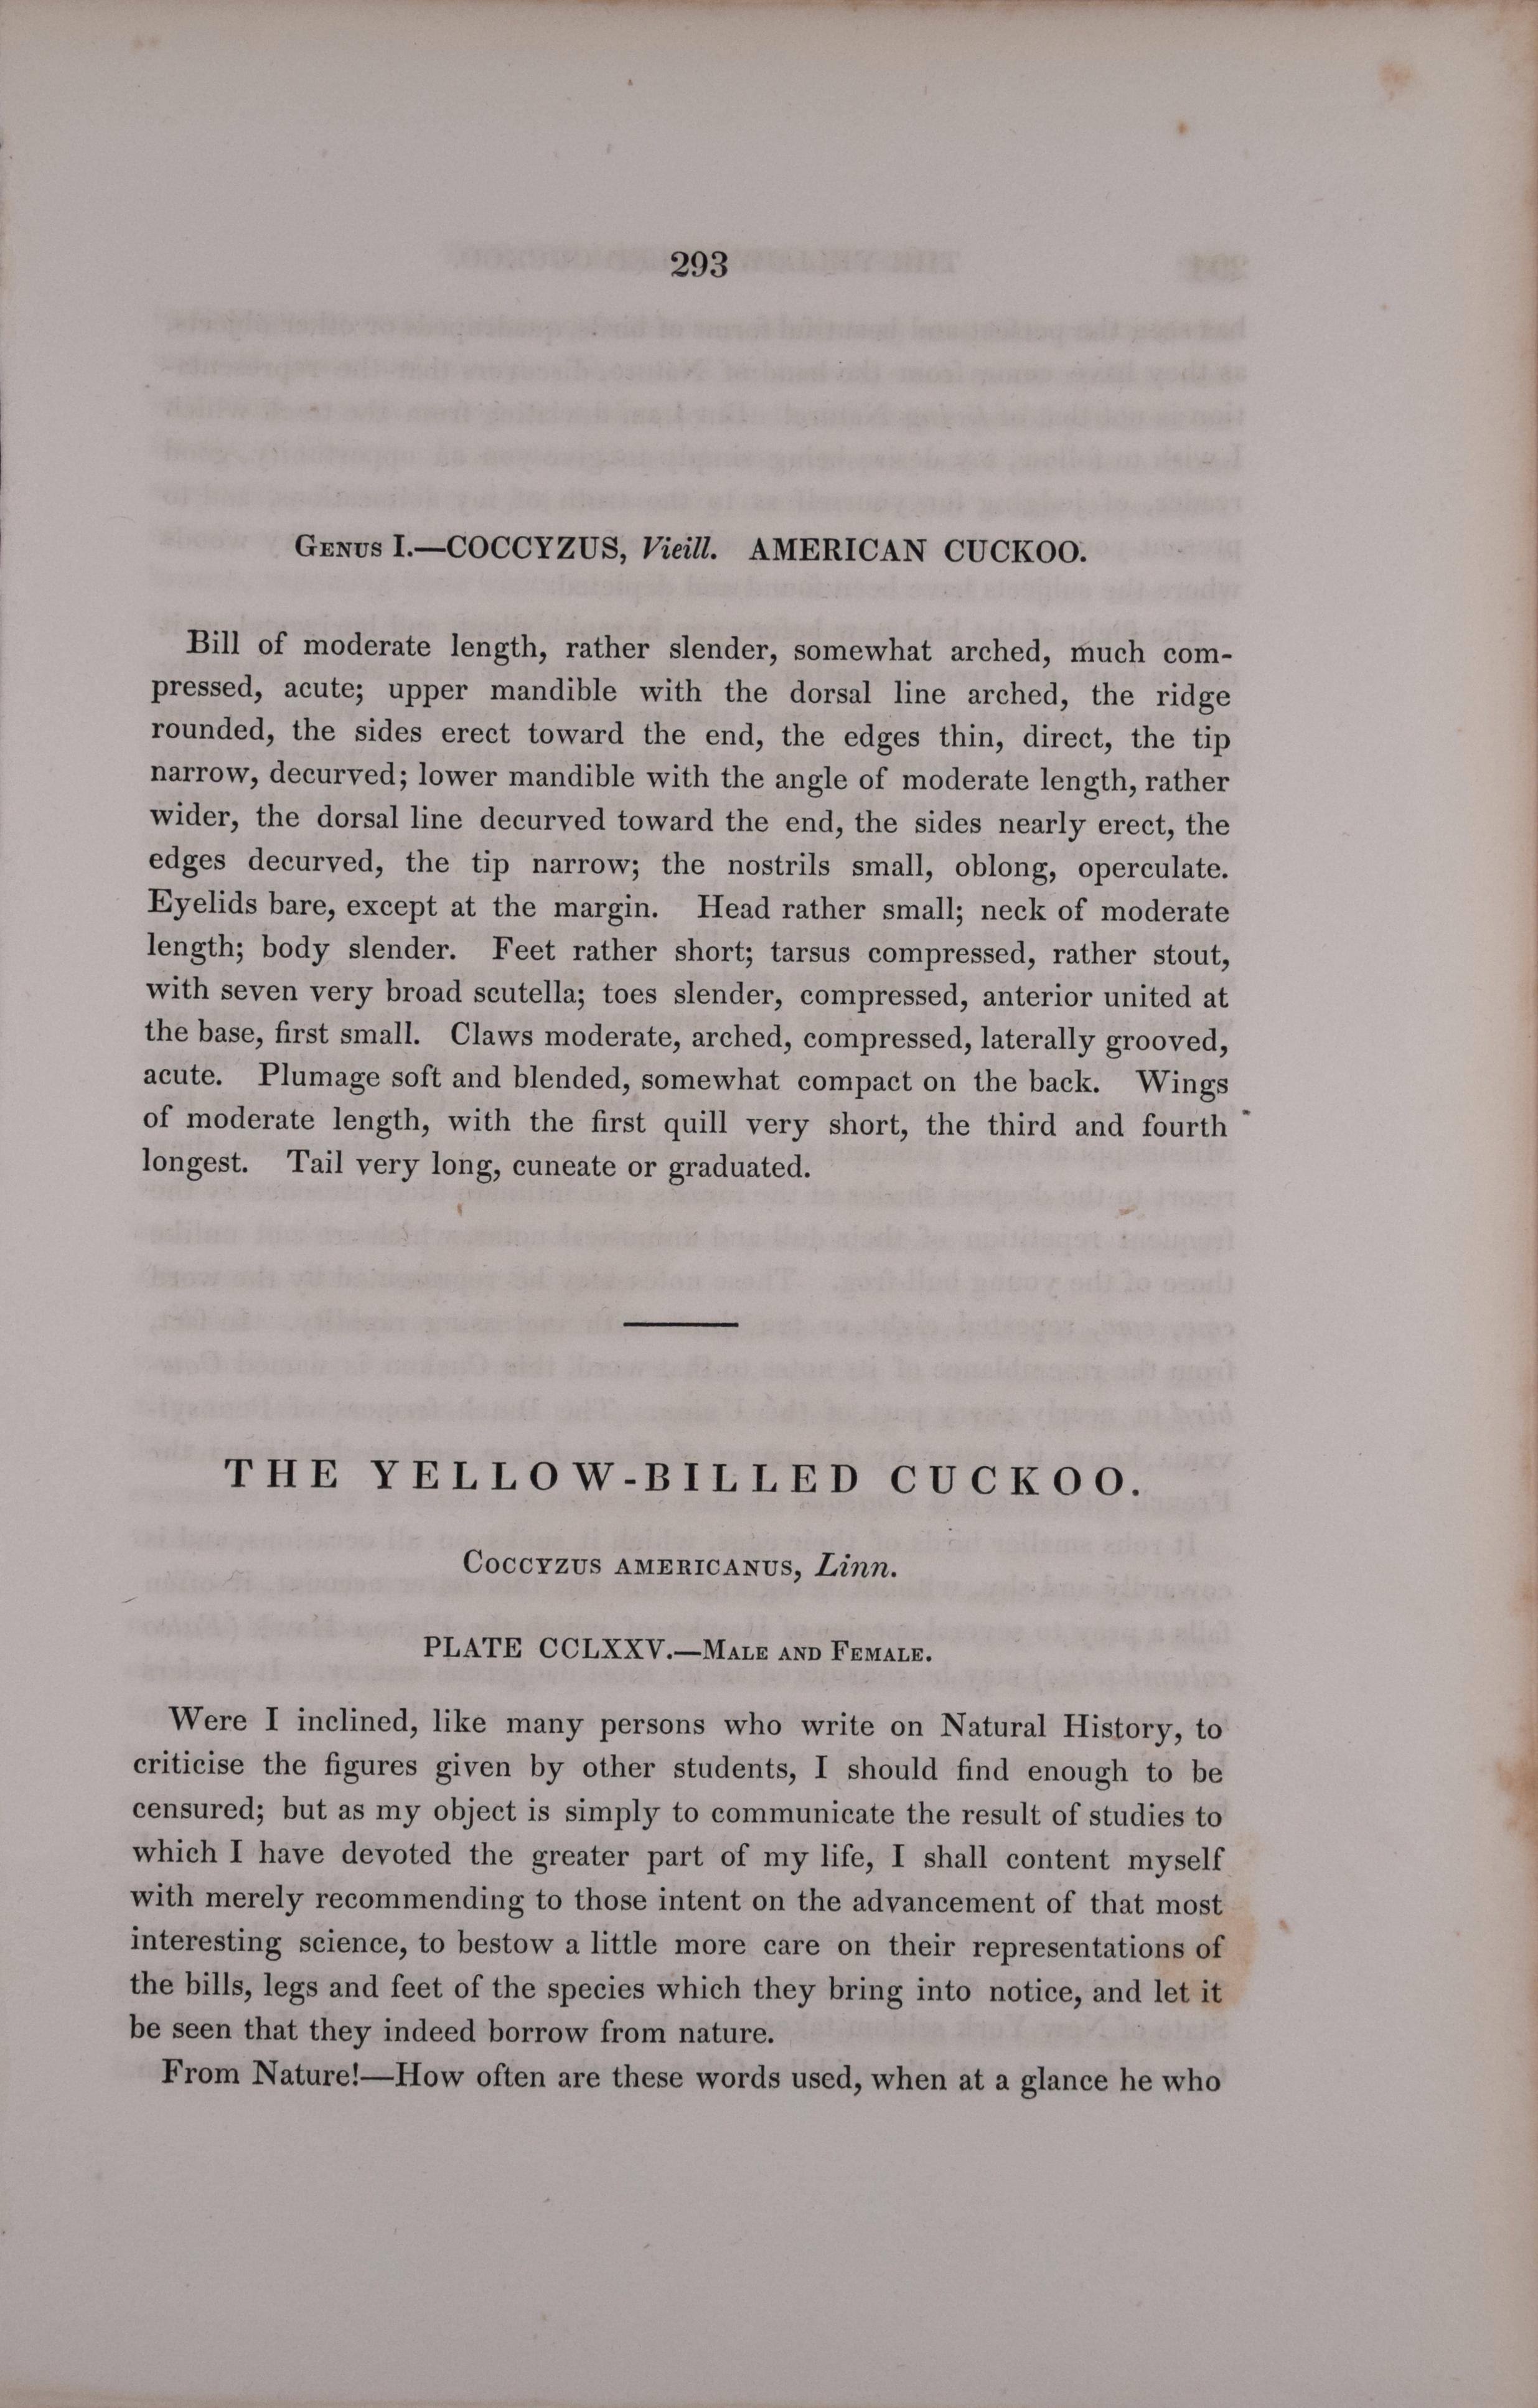 Dies ist ein Original 1. octavo Ausgabe John James Audubon handkolorierte Lithographie mit dem Titel 